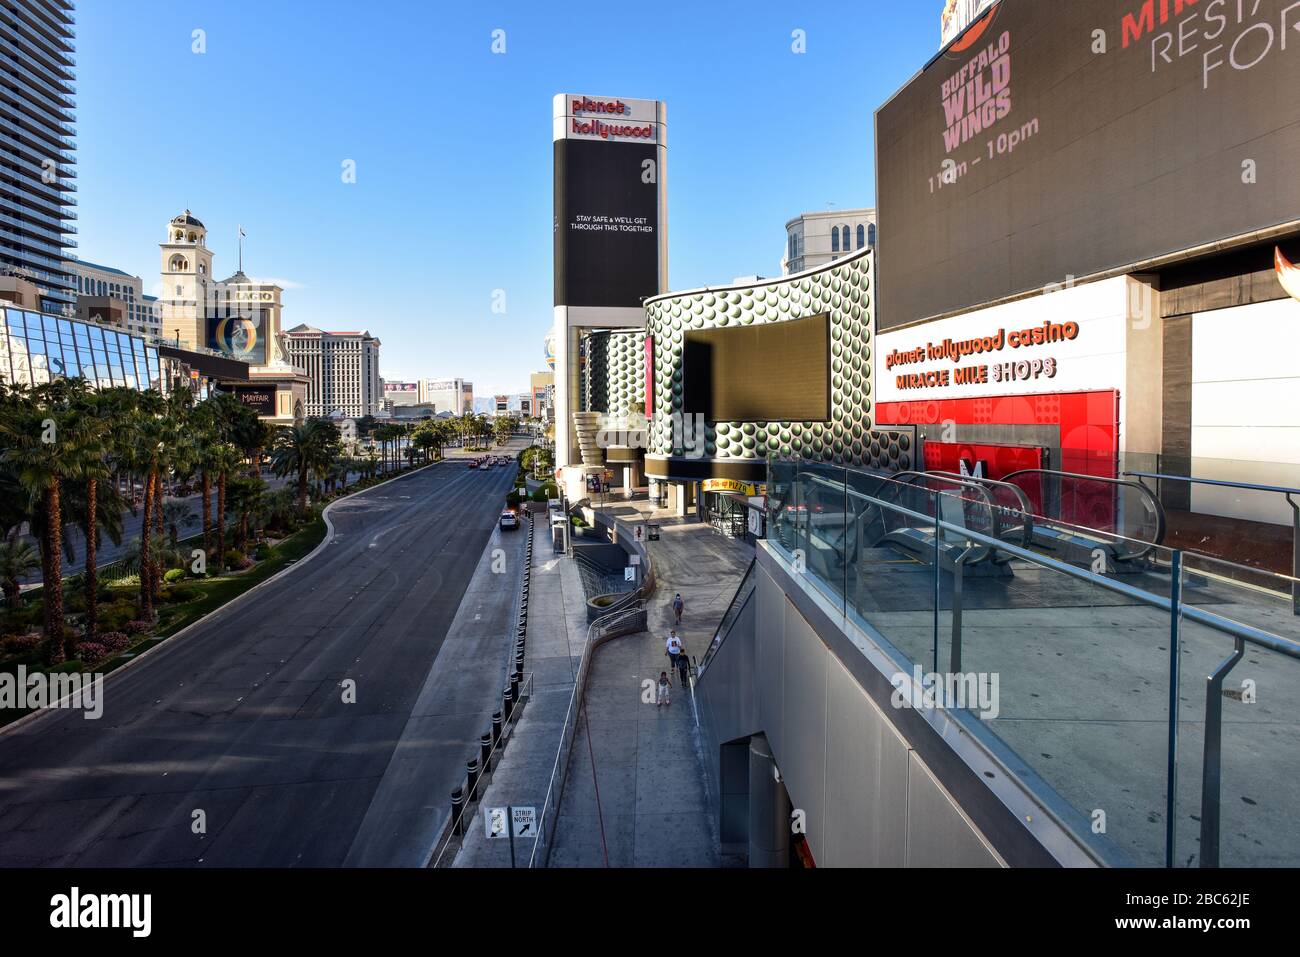 Las Vegas ist wegen Coronavirus geschlossen, der Strip ist ziemlich leer. Keine Menschen auf den Straßen und alles ist geschlossen. Stockfoto